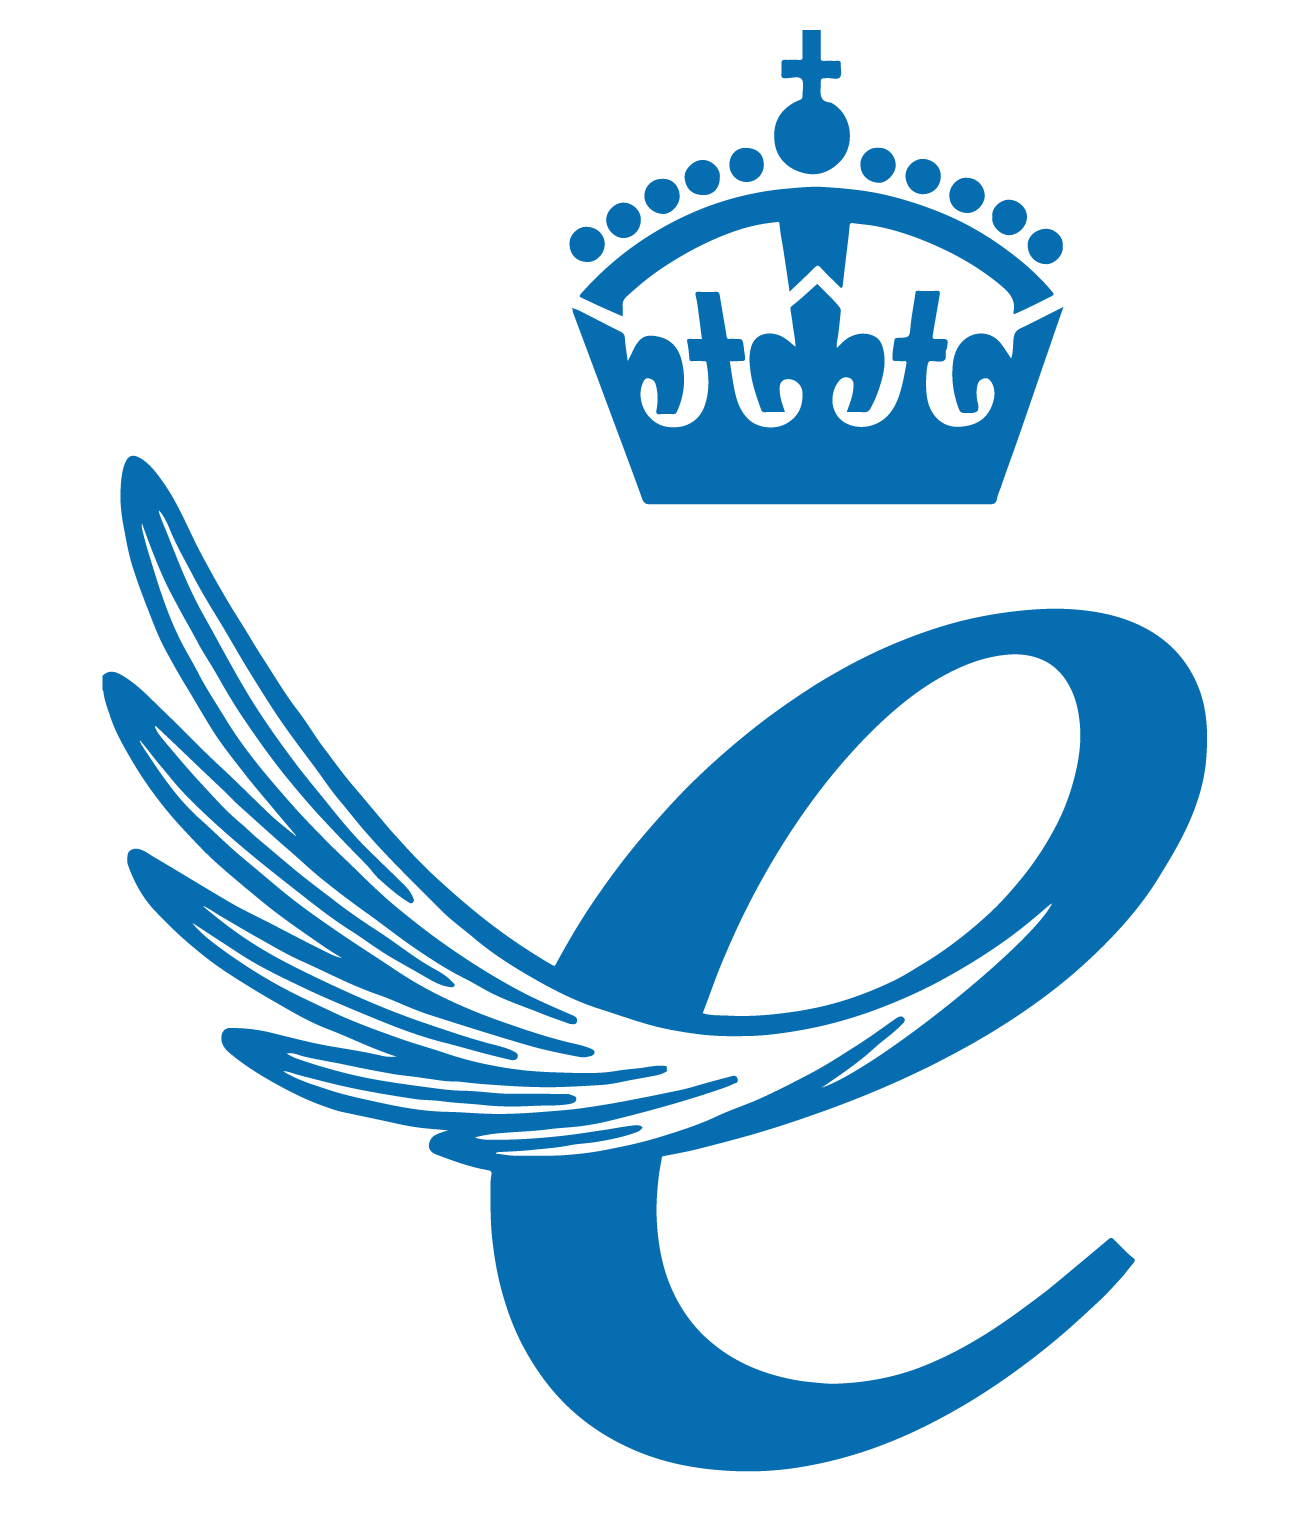 The Queen's Award logo